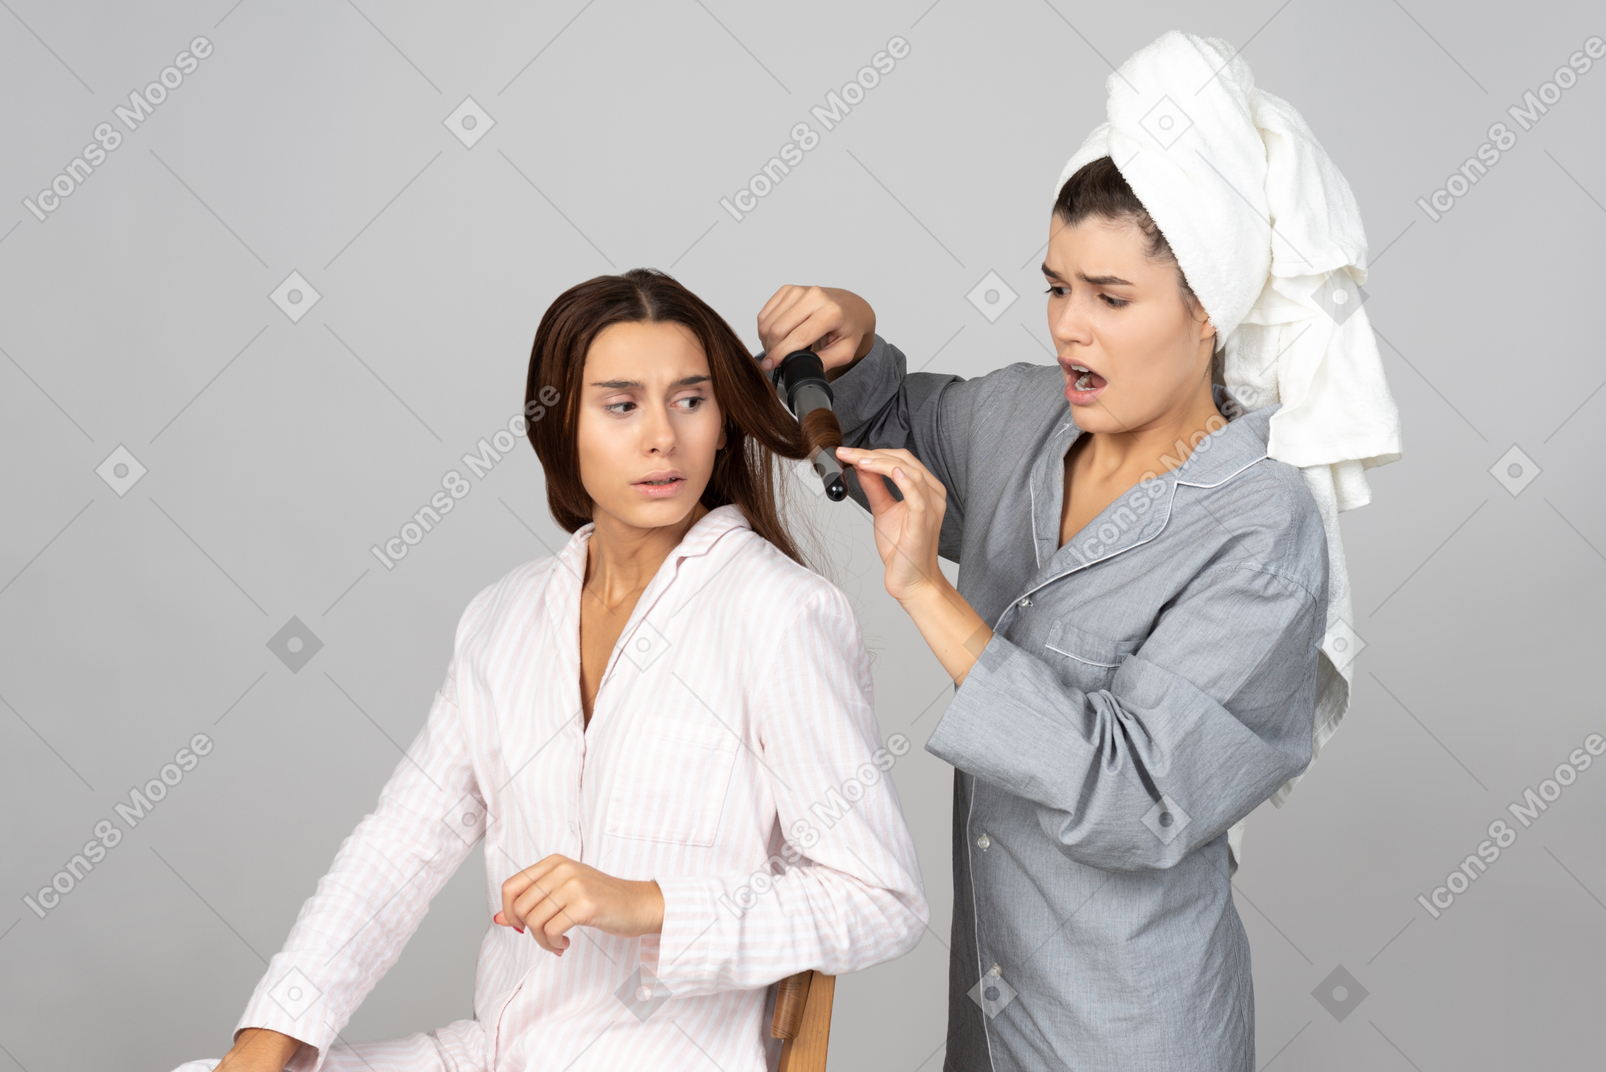 Menina hairstyling cabelo da amiga com ferro e parece que algo deu errado